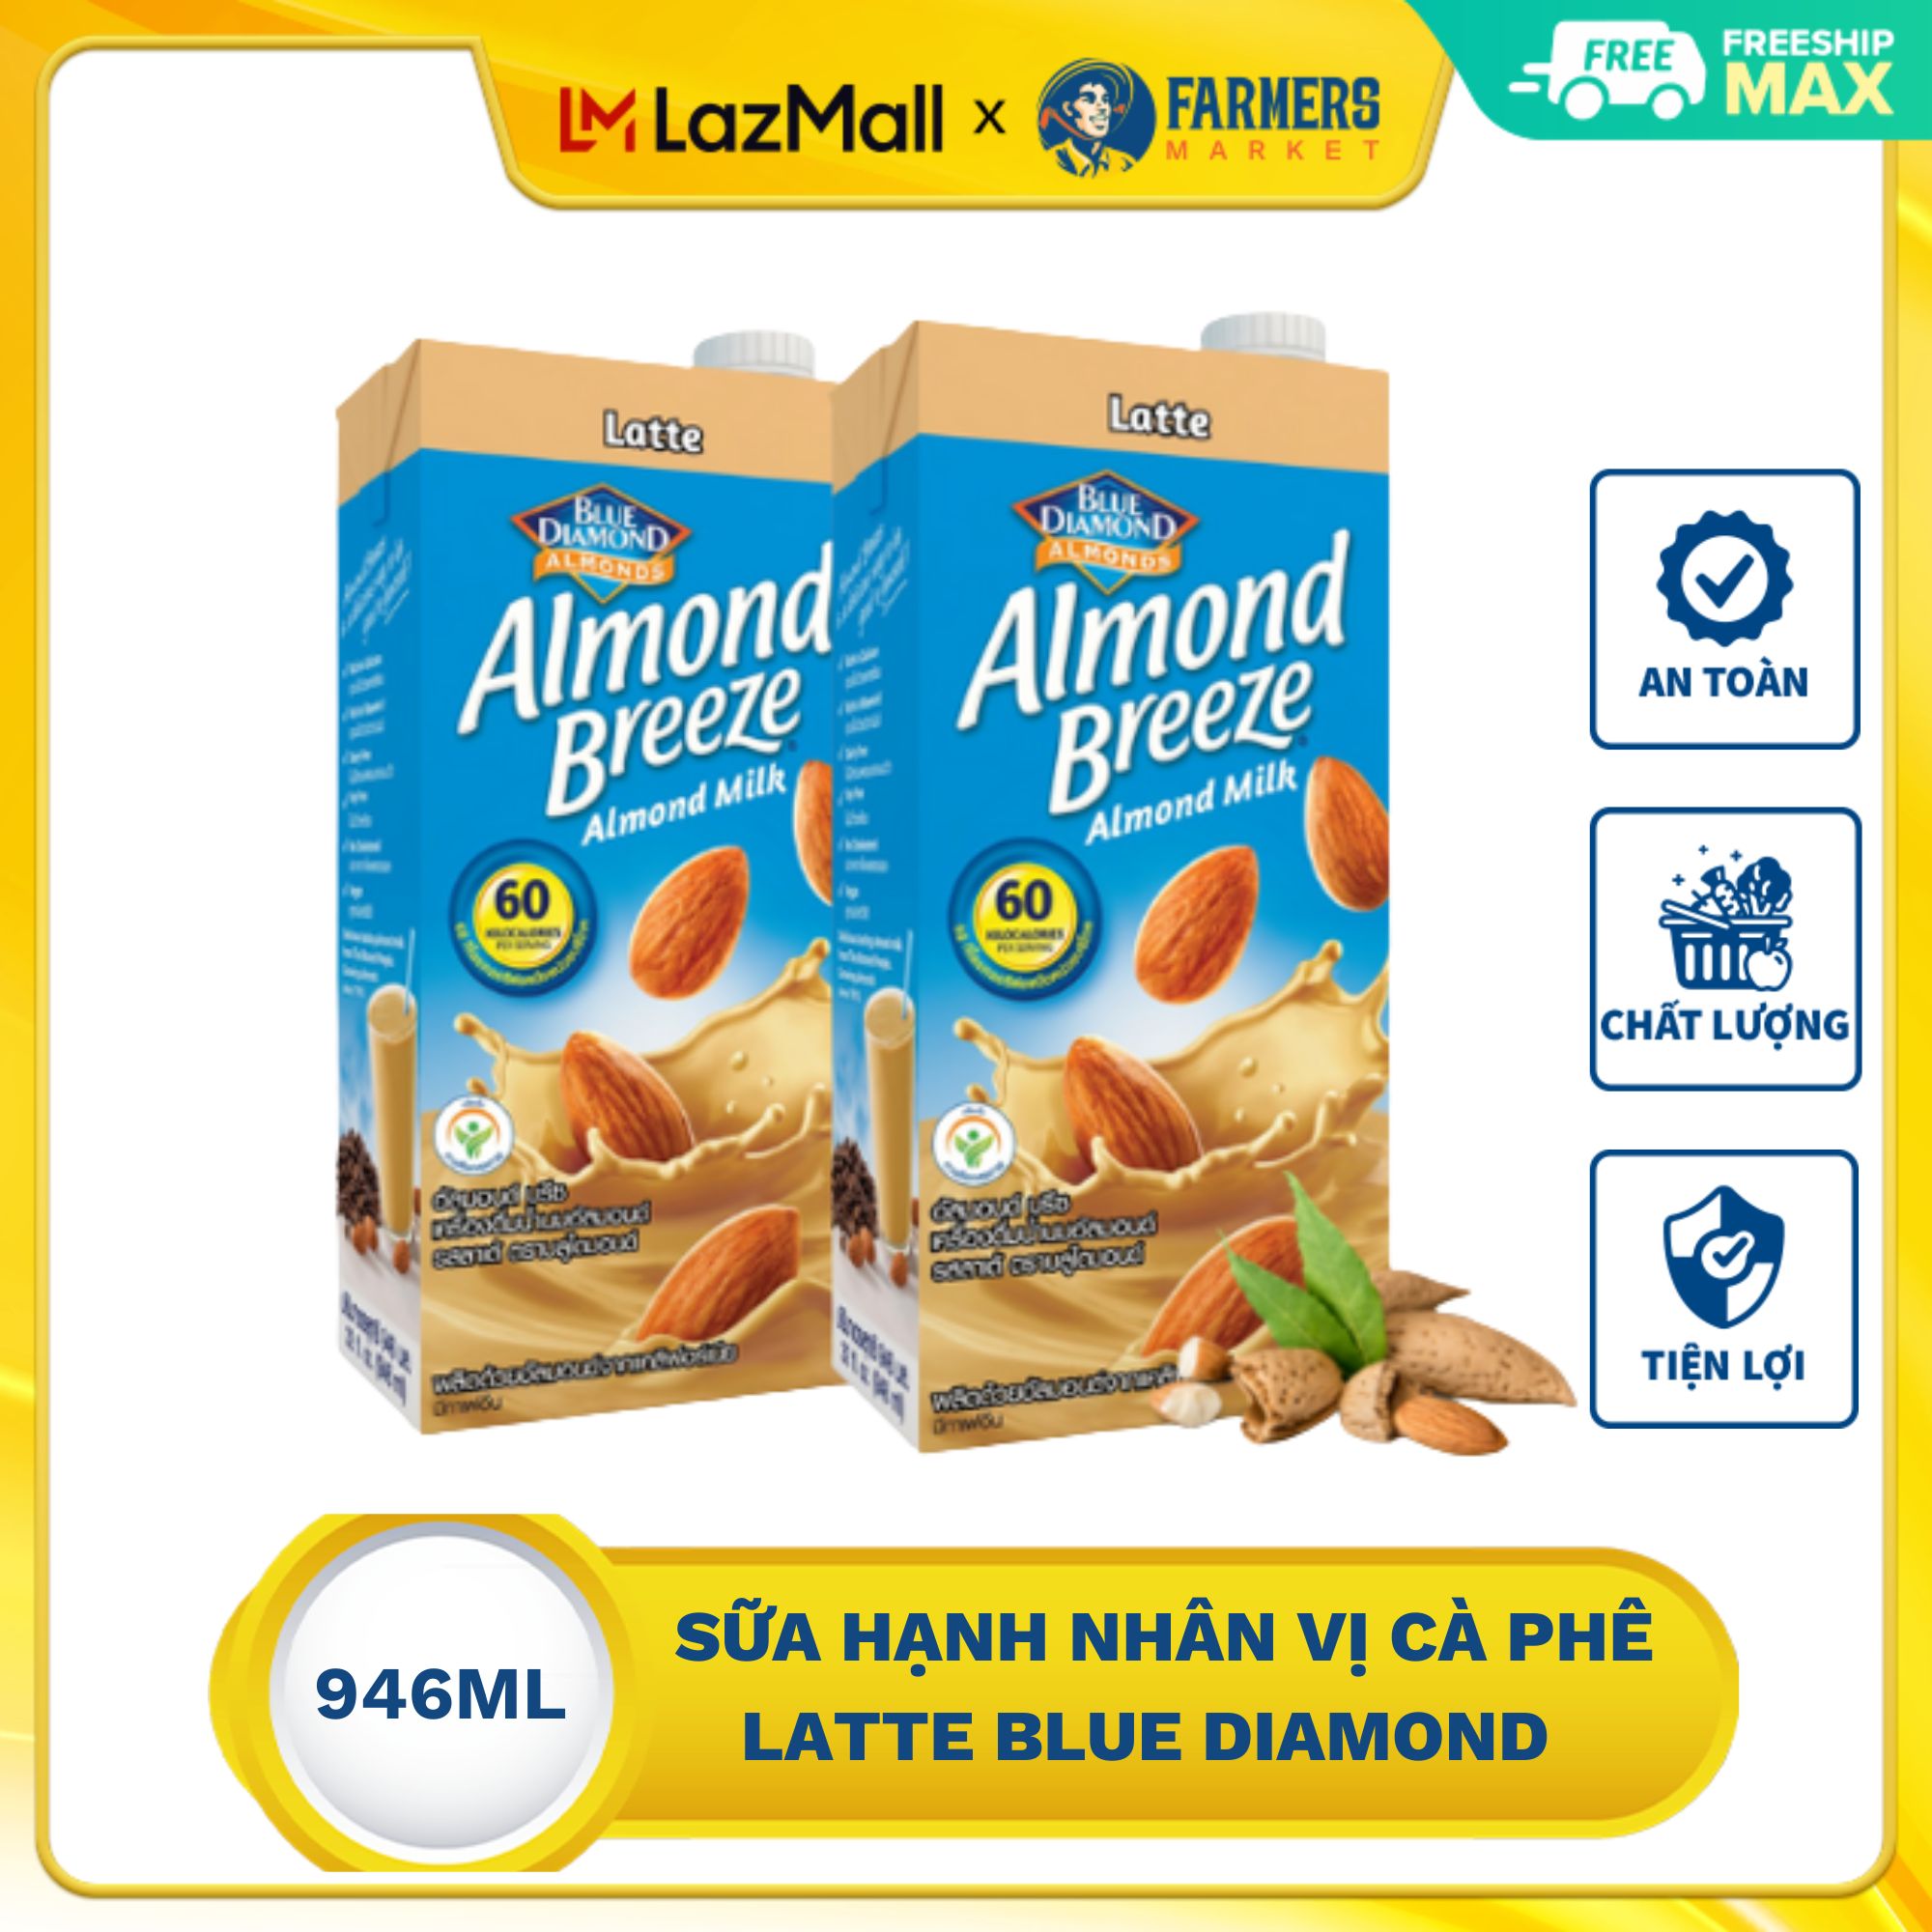 Sữa hạnh nhân vị cà phê latte Blue Diamond 946 ml thơm ngon giàu dinh dưỡng